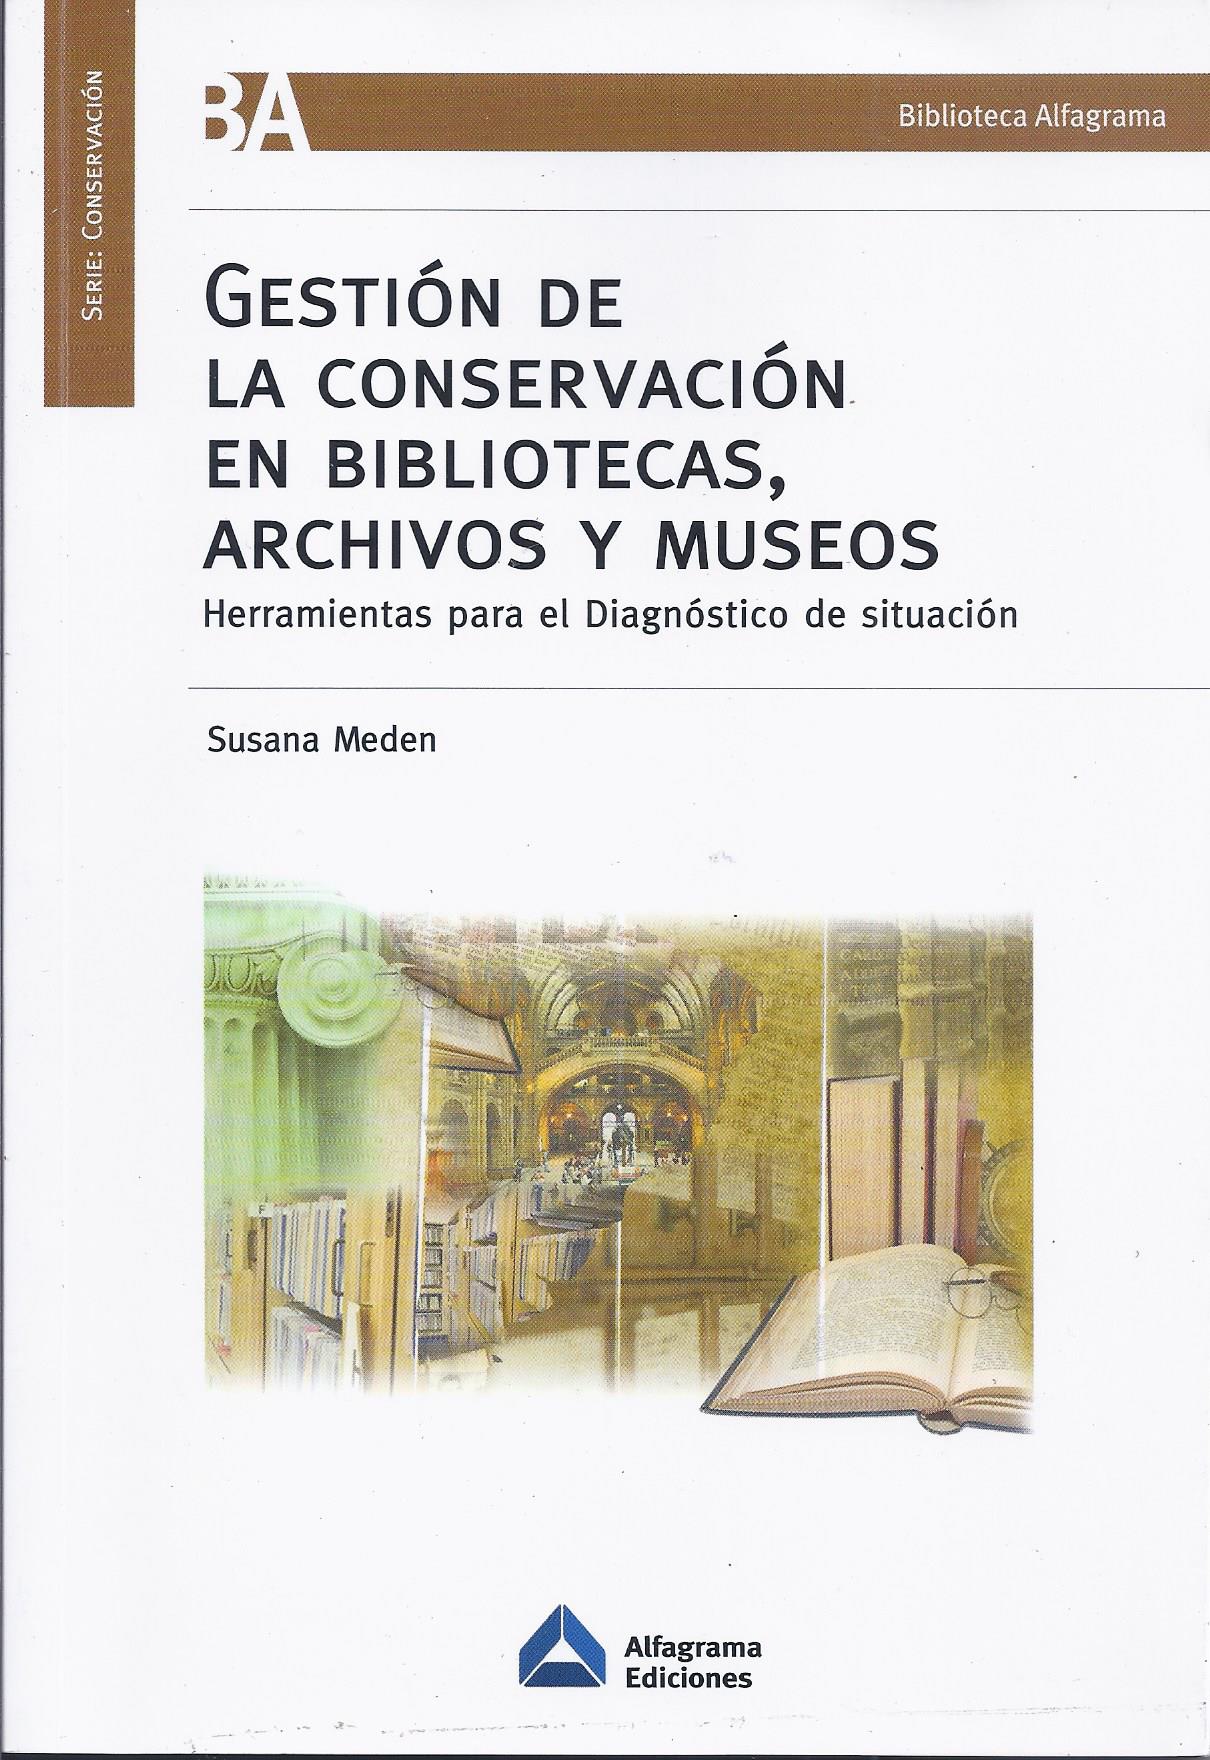 Gestión de la conservación en bibliotecas, archivos y museos. Herramientas para el diagnóstico de situación